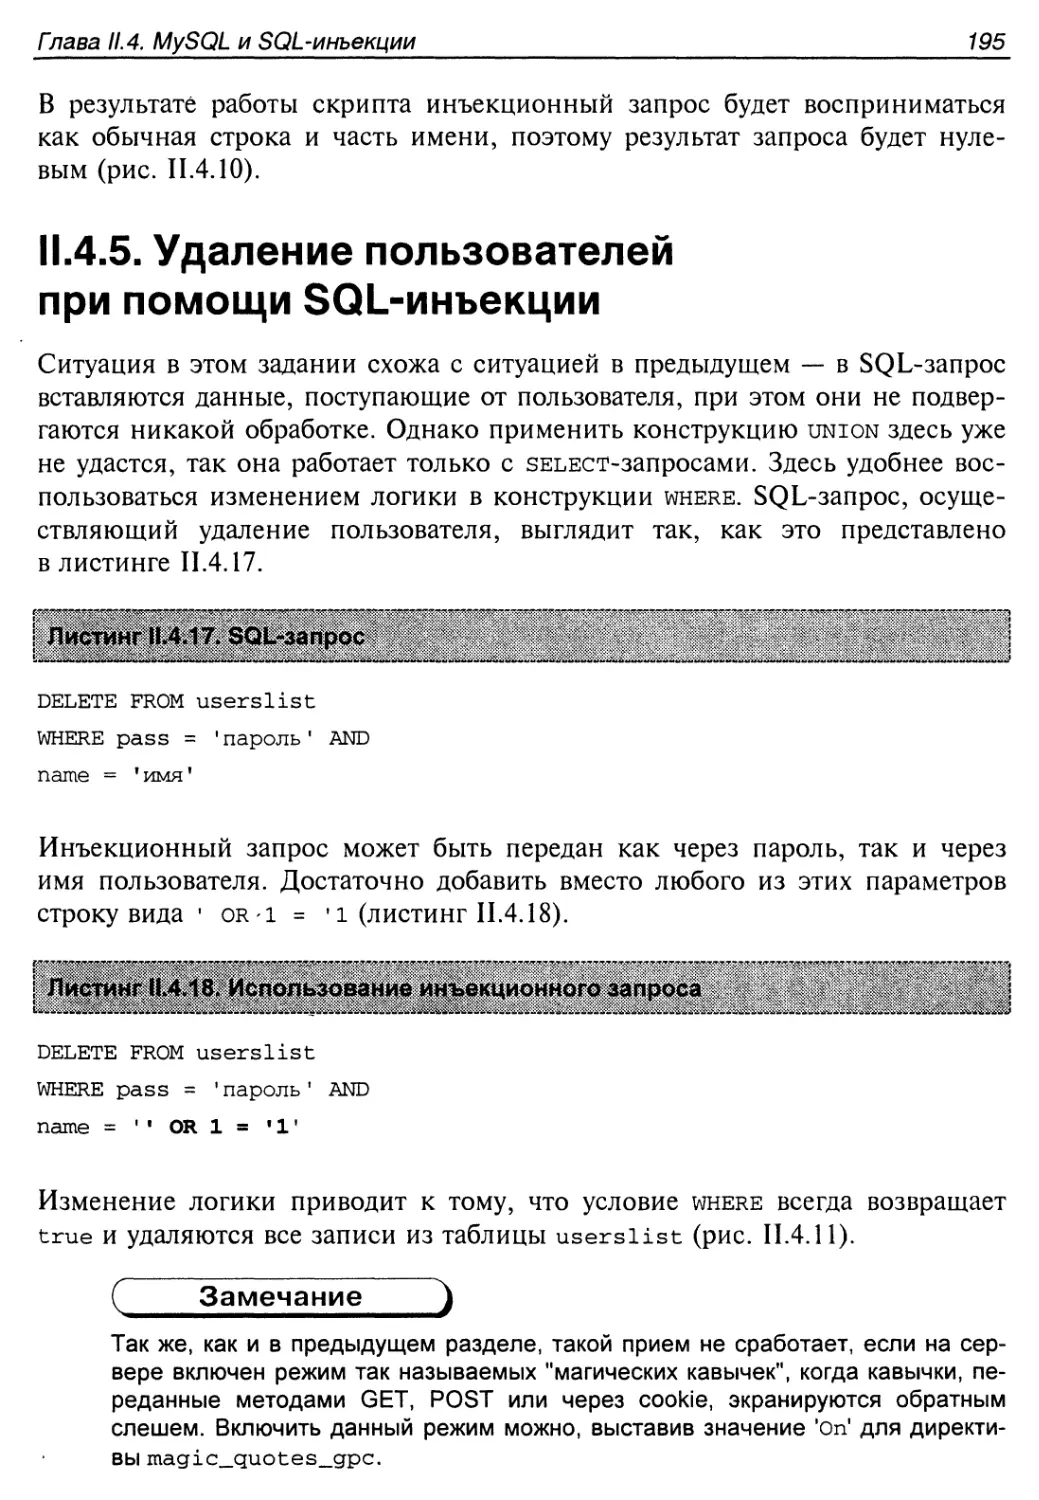 II.4.5. Удаление пользователей при помощи SQL-инъекции